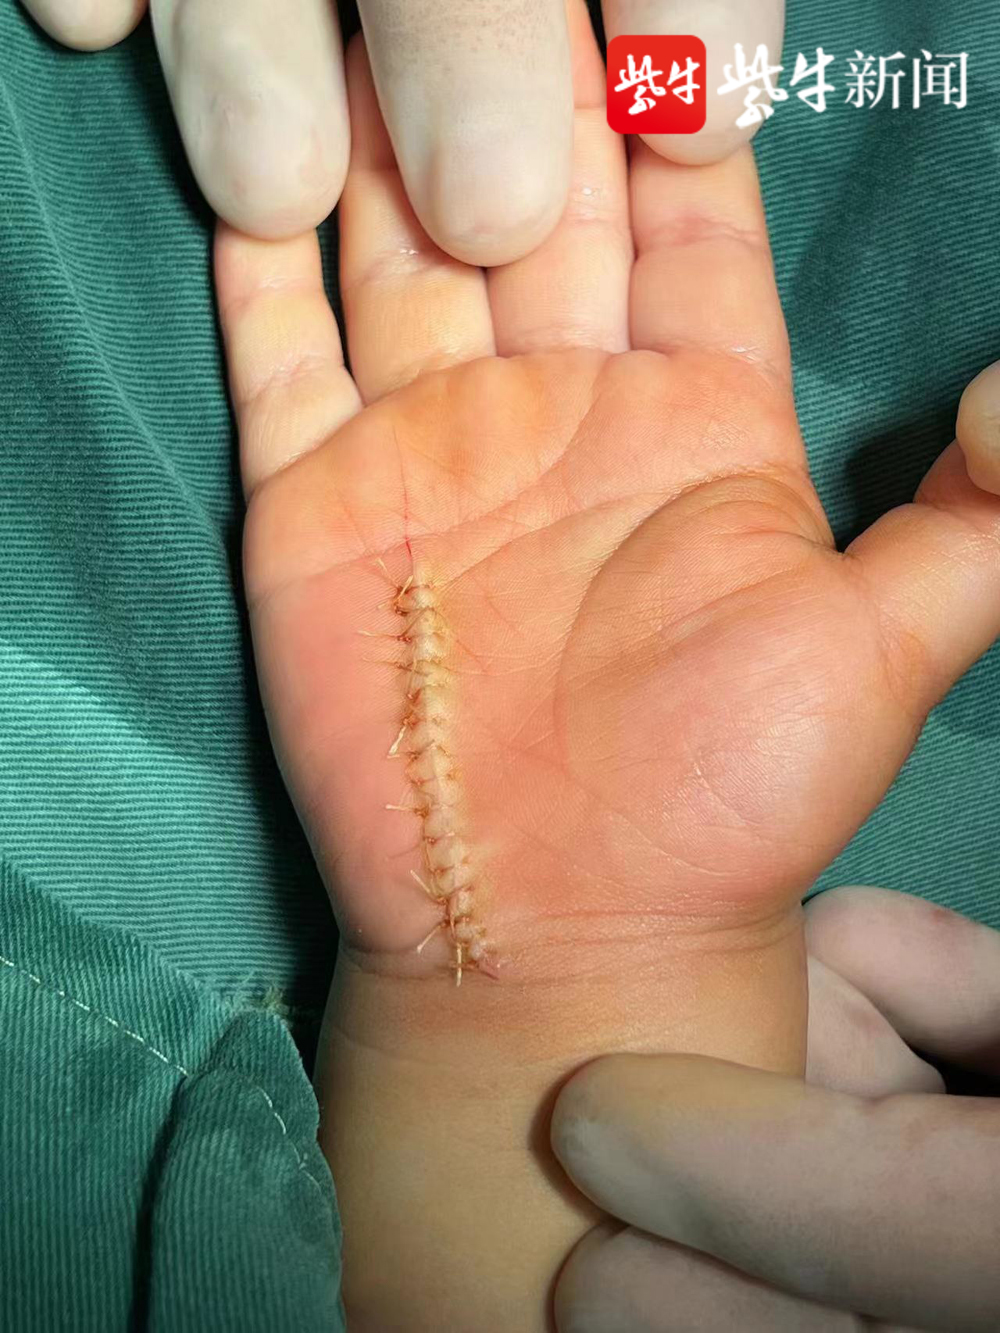 男童手掌神经血管断裂 医生显微镜下在直径2毫米血管上做 针线活